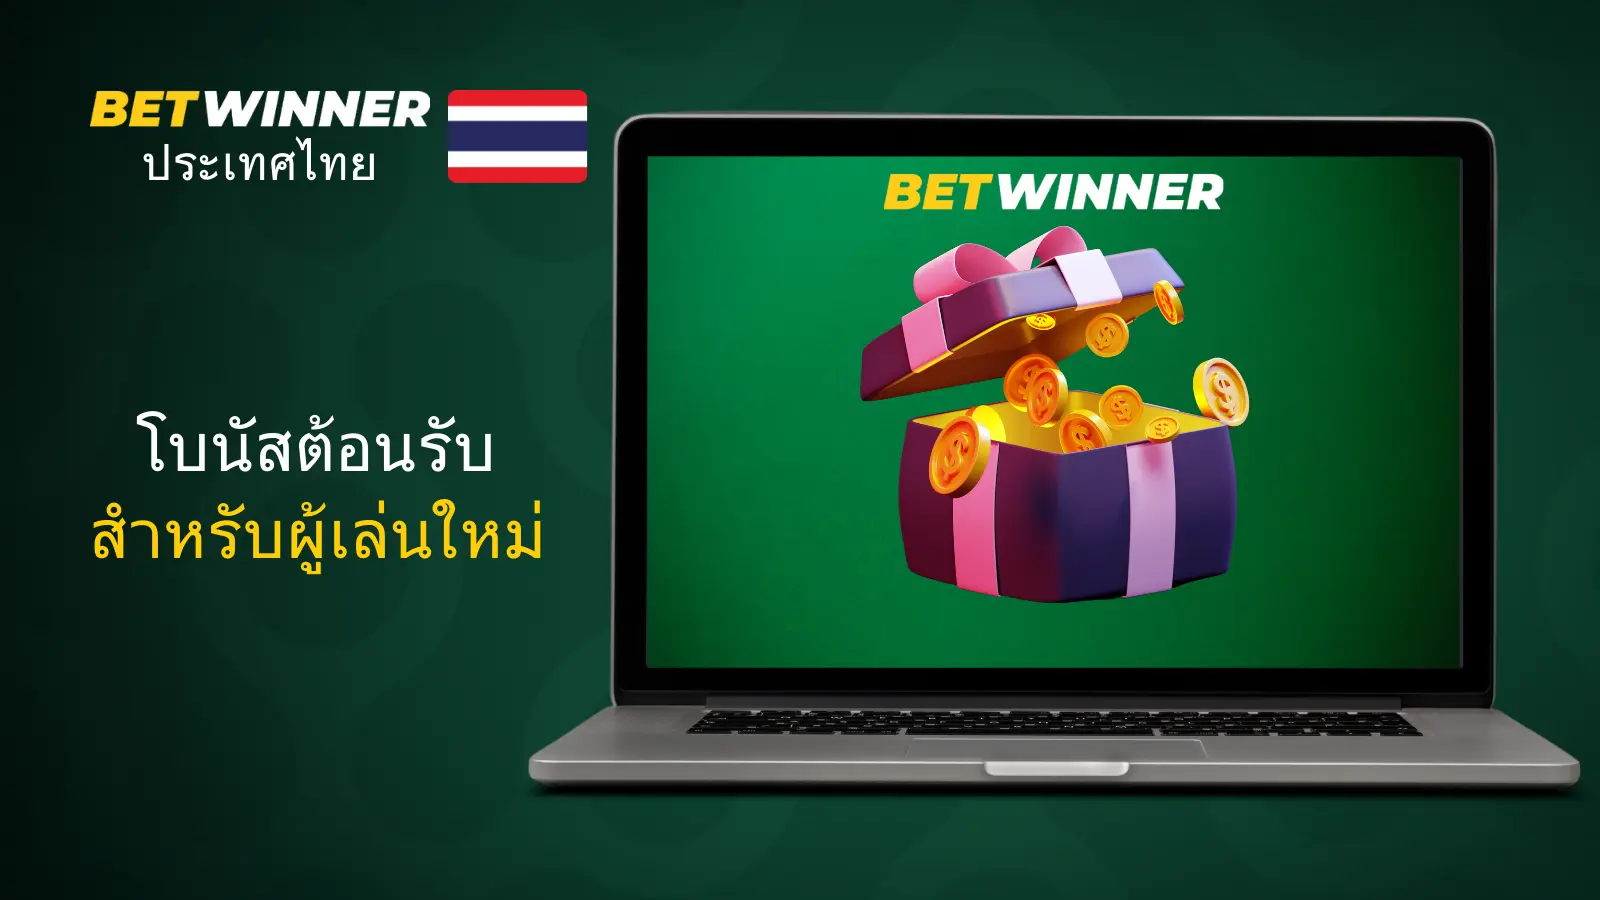 ความคิดเห็นและการรีวิวเกี่ยวกับ Betwinner ในประเทศไทย